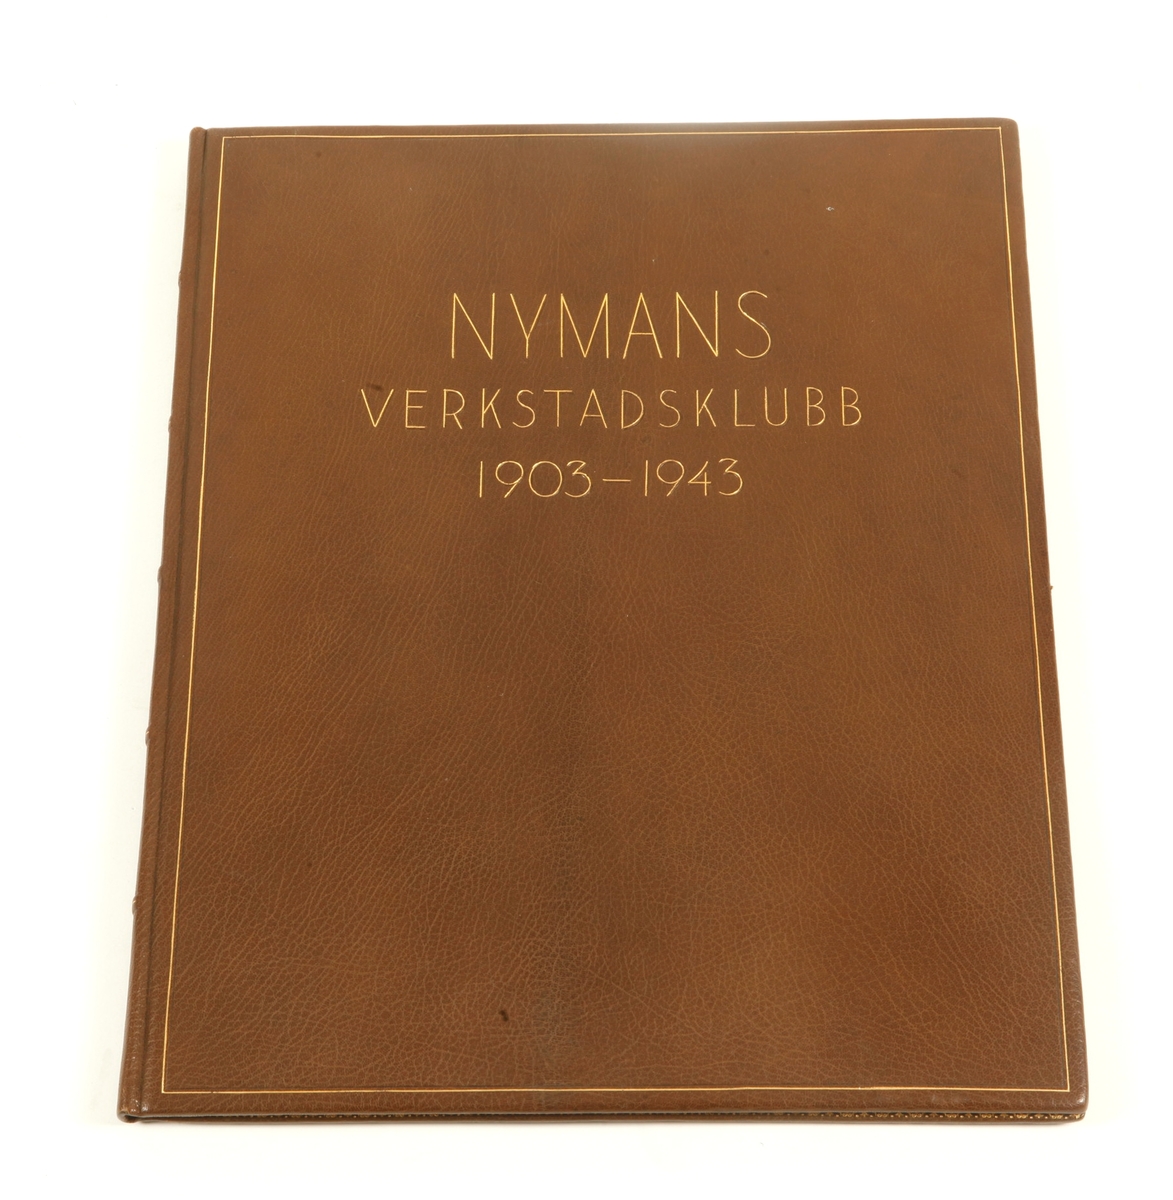 Festskrift i brunt skinnband med text i guld: NYMANS VERKSTADSKLUBB 1903 - 1943, med akvarellerade tuschteckningar, maskinskriven text och inklistrade fotografier. Signerad: L. Spove.L.